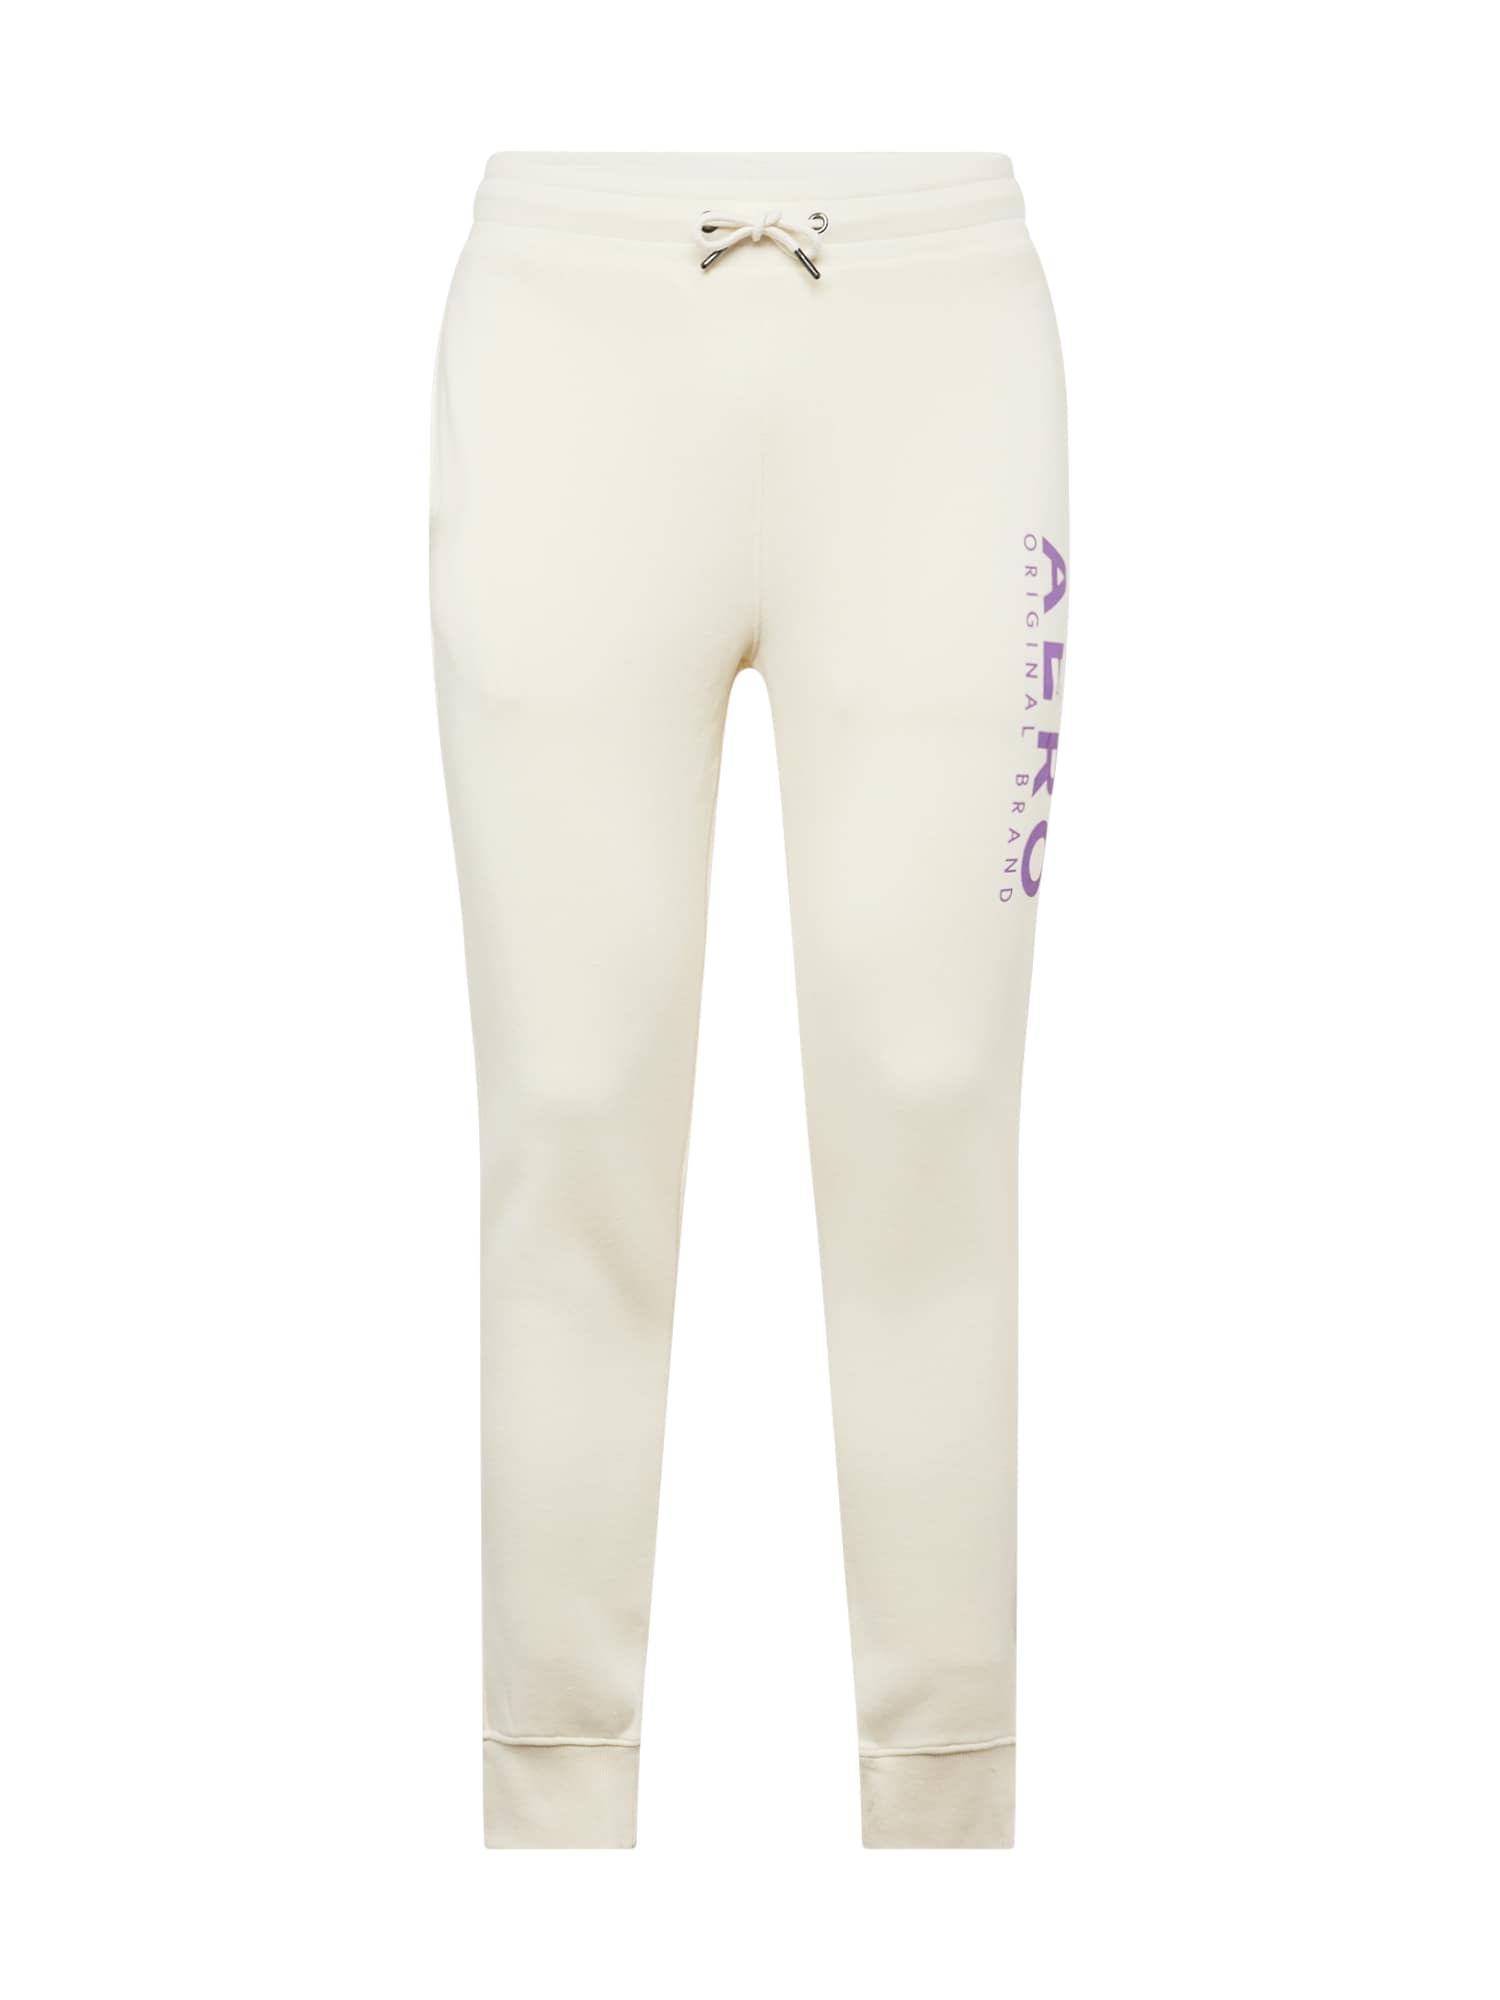 AÉROPOSTALE Sportinės kelnės nebalintos drobės spalva / šviesiai violetinė